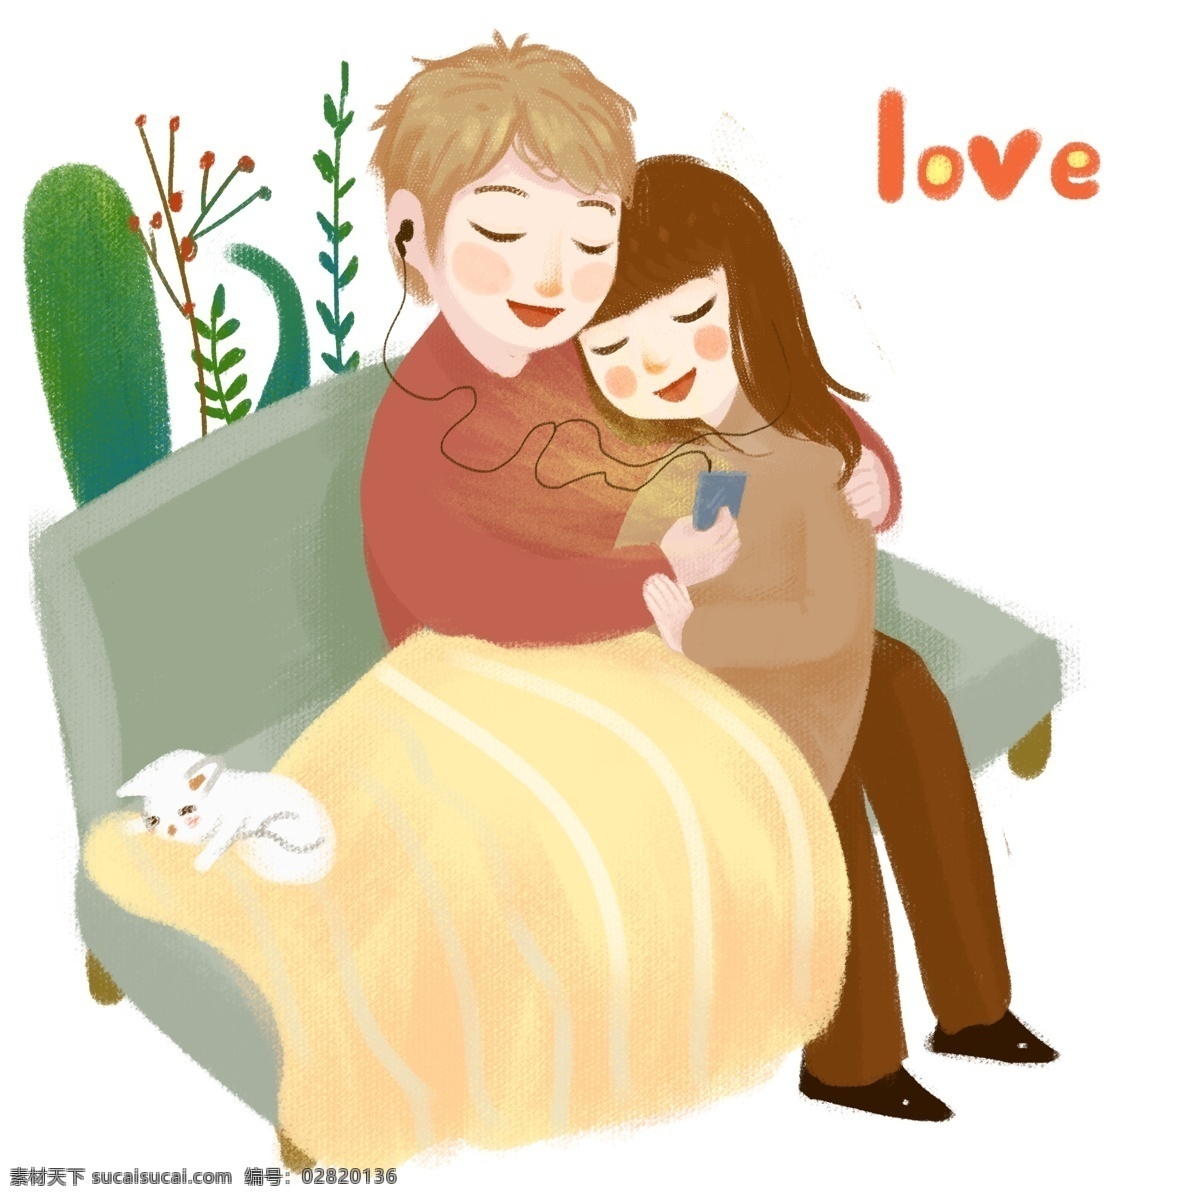 情人节 宅 在家 情侣 人物 插画 红色的小花 绿色的植物 灰色的沙发 宅在家的情侣 恩爱的情侣